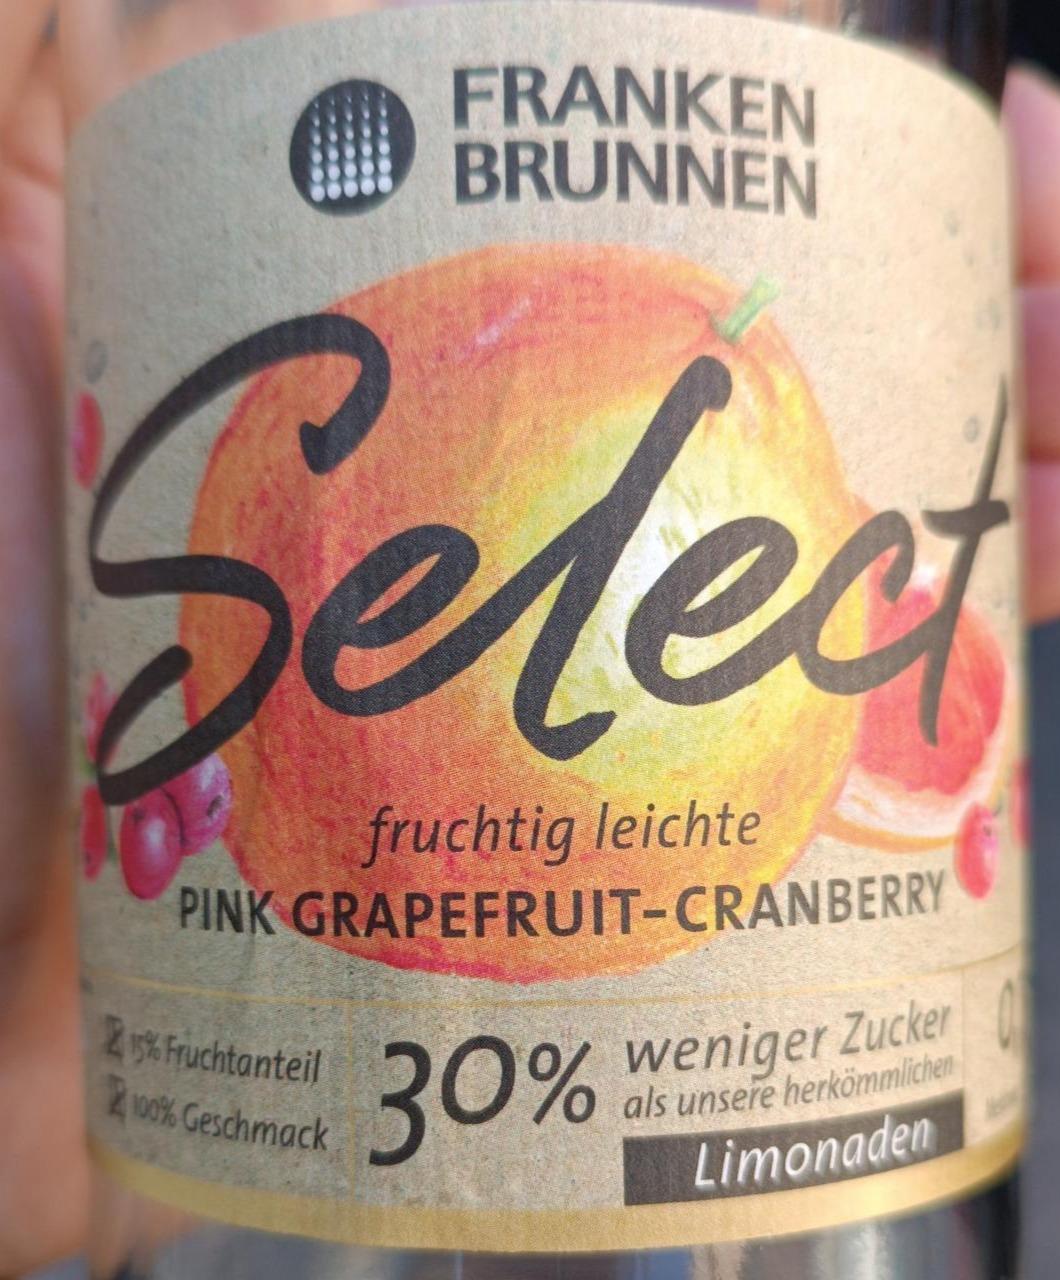 Fotografie - Select Pink Grapefruit-Cranberry Franken Brunem